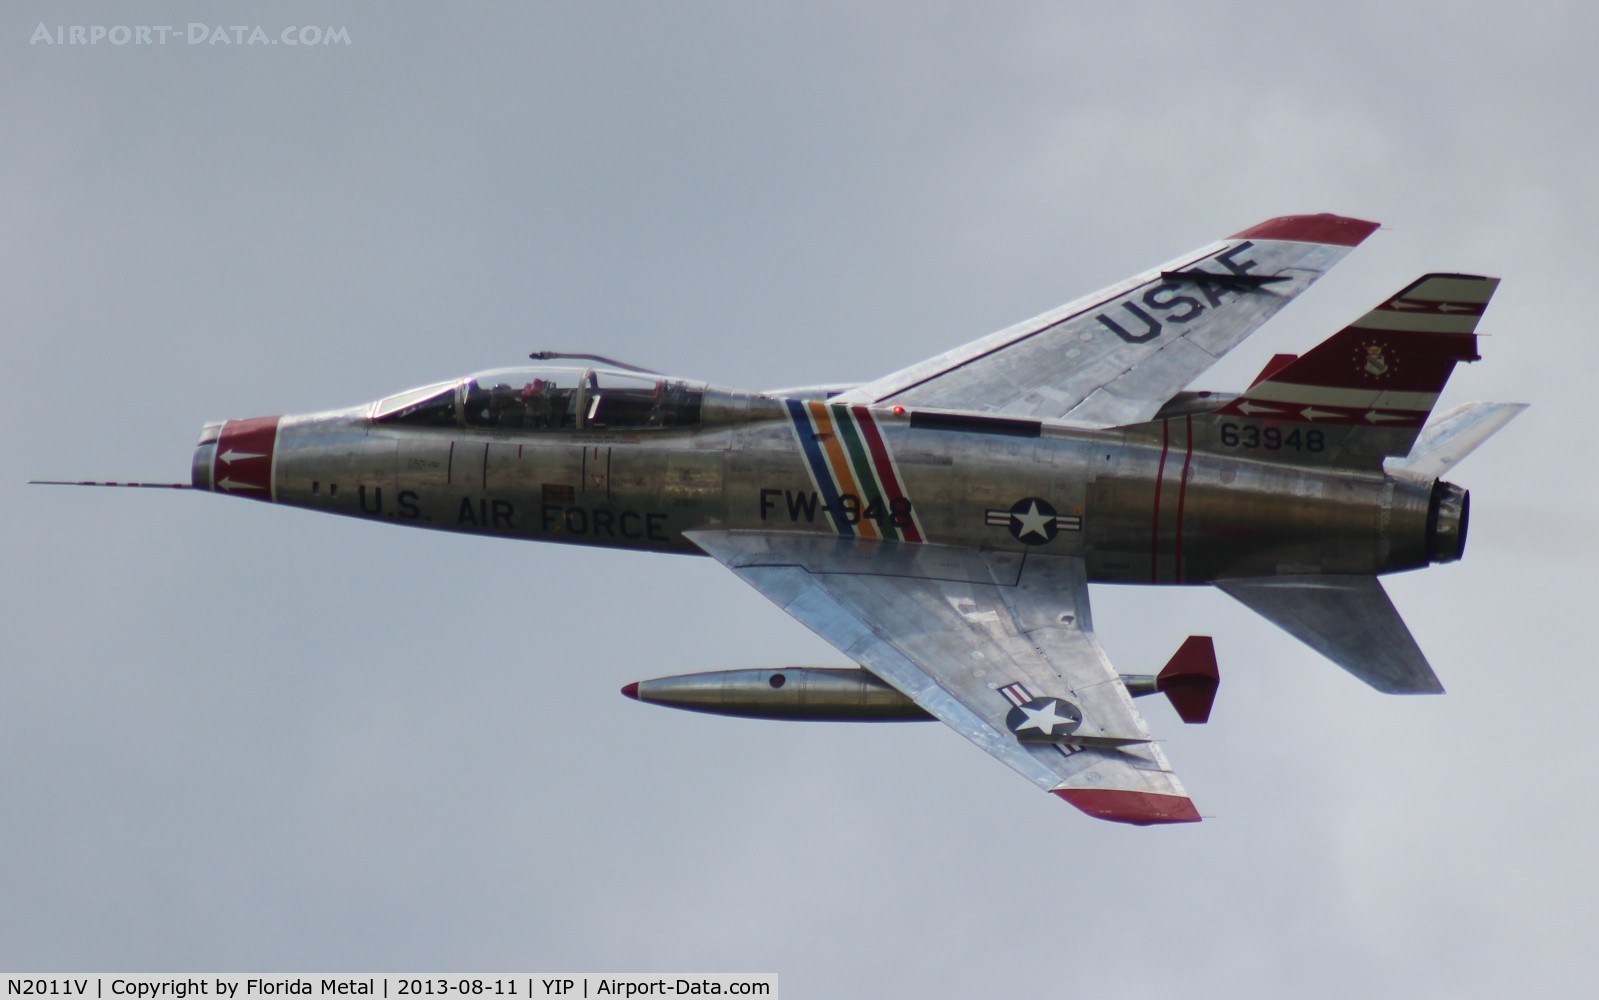 N2011V, 1958 North American F-100F Super Sabre C/N 243-224, F-100F Super Sabre